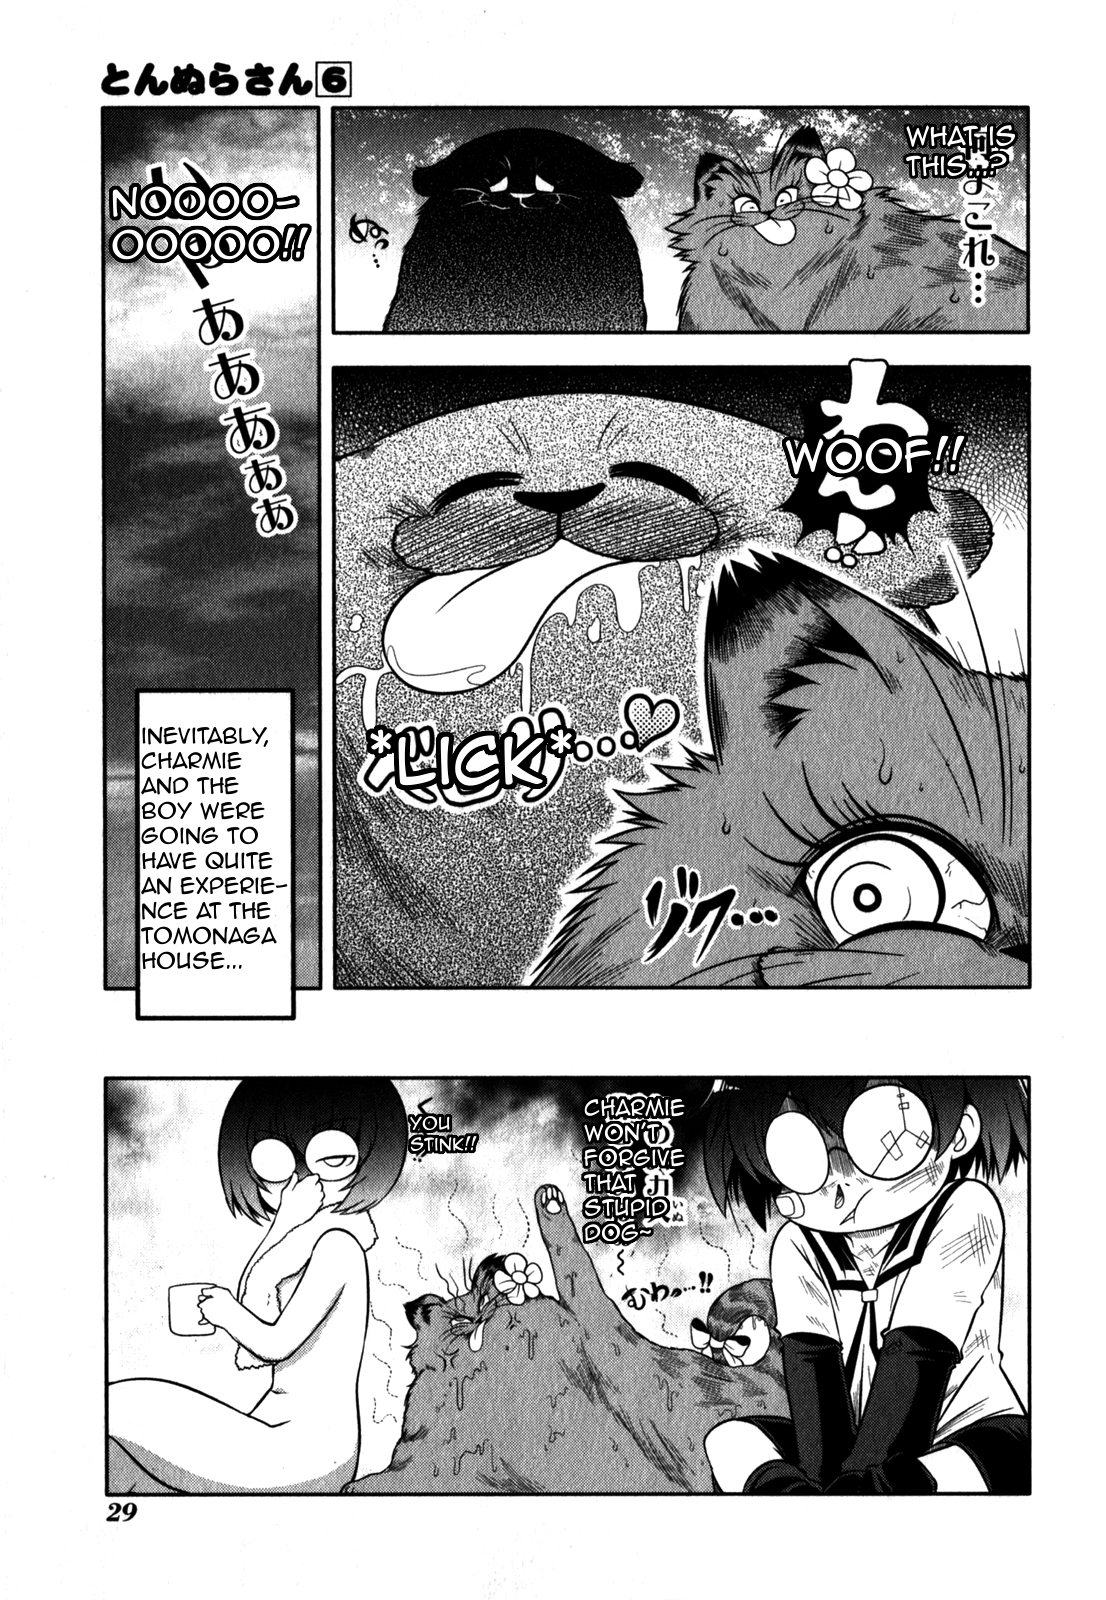 Tonnura san Vol. 6 Ch. 29 Shibaura Boy Fighting a Man's Battle